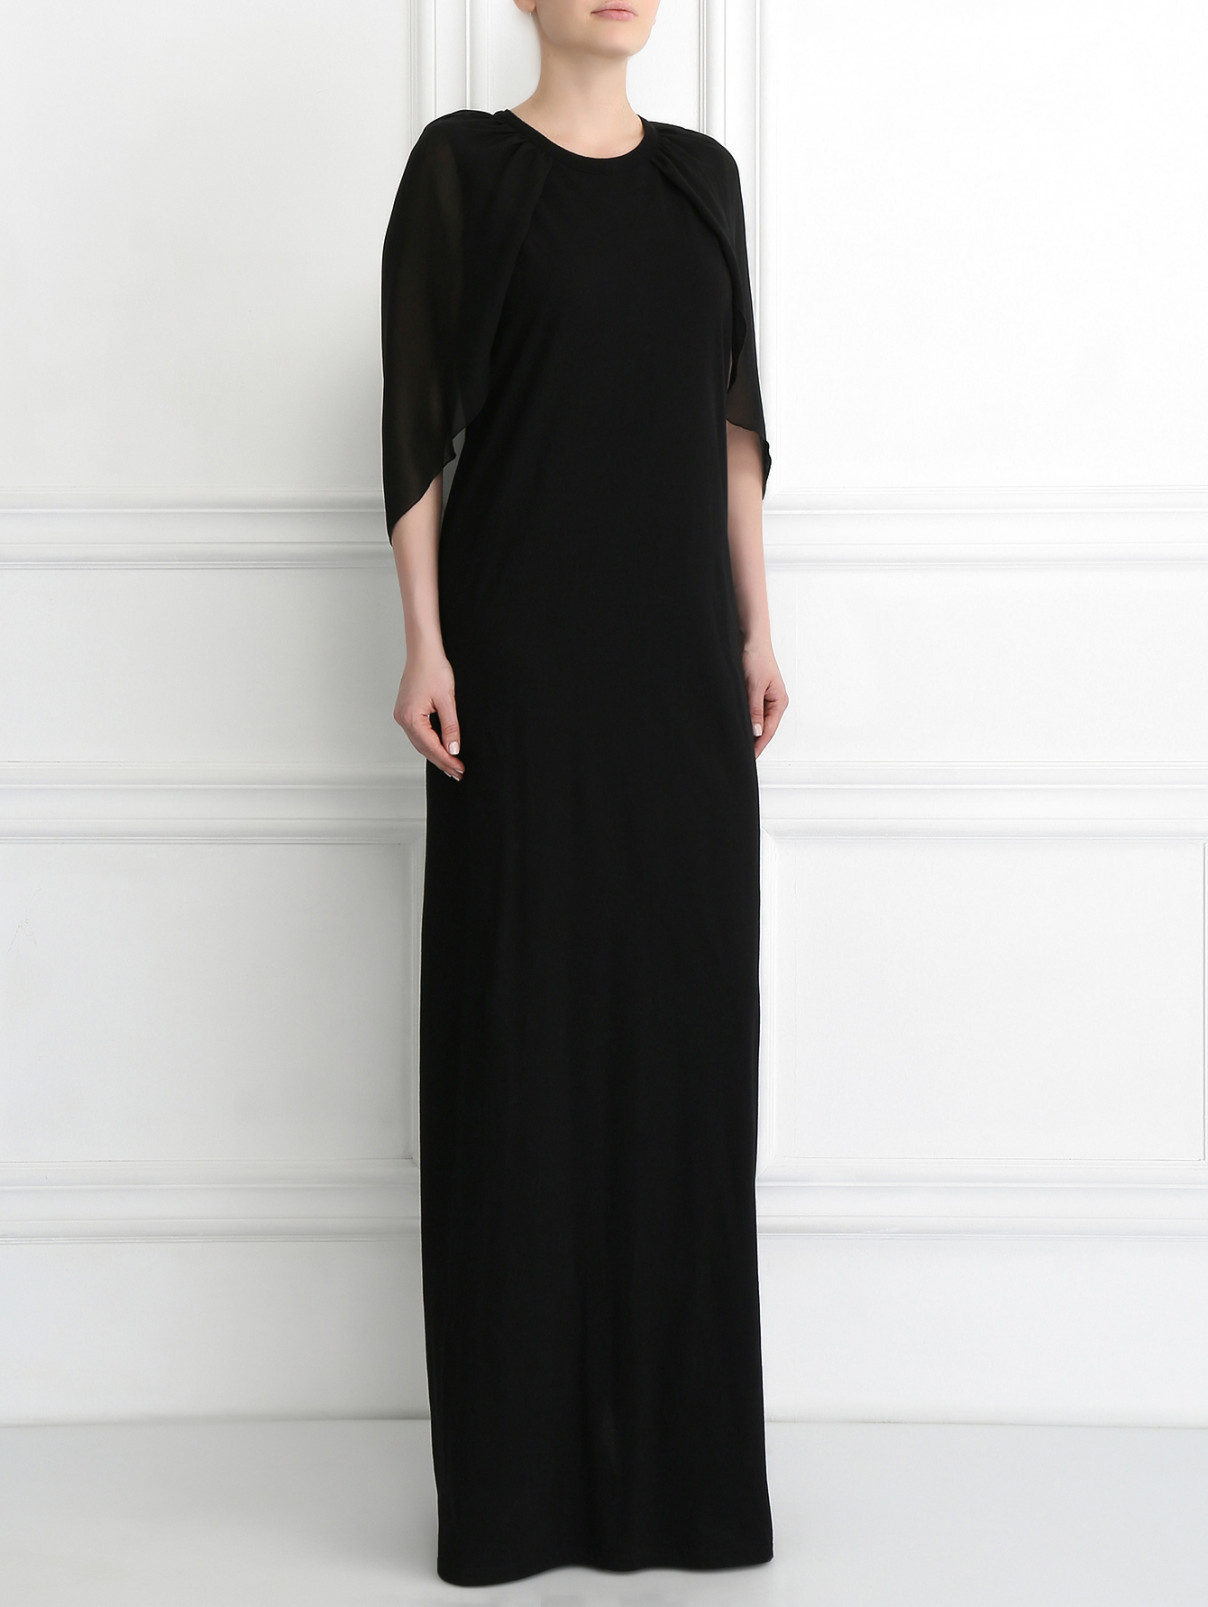 Платье-макси из хлопка Giambattista Valli  –  Модель Общий вид  – Цвет:  Черный